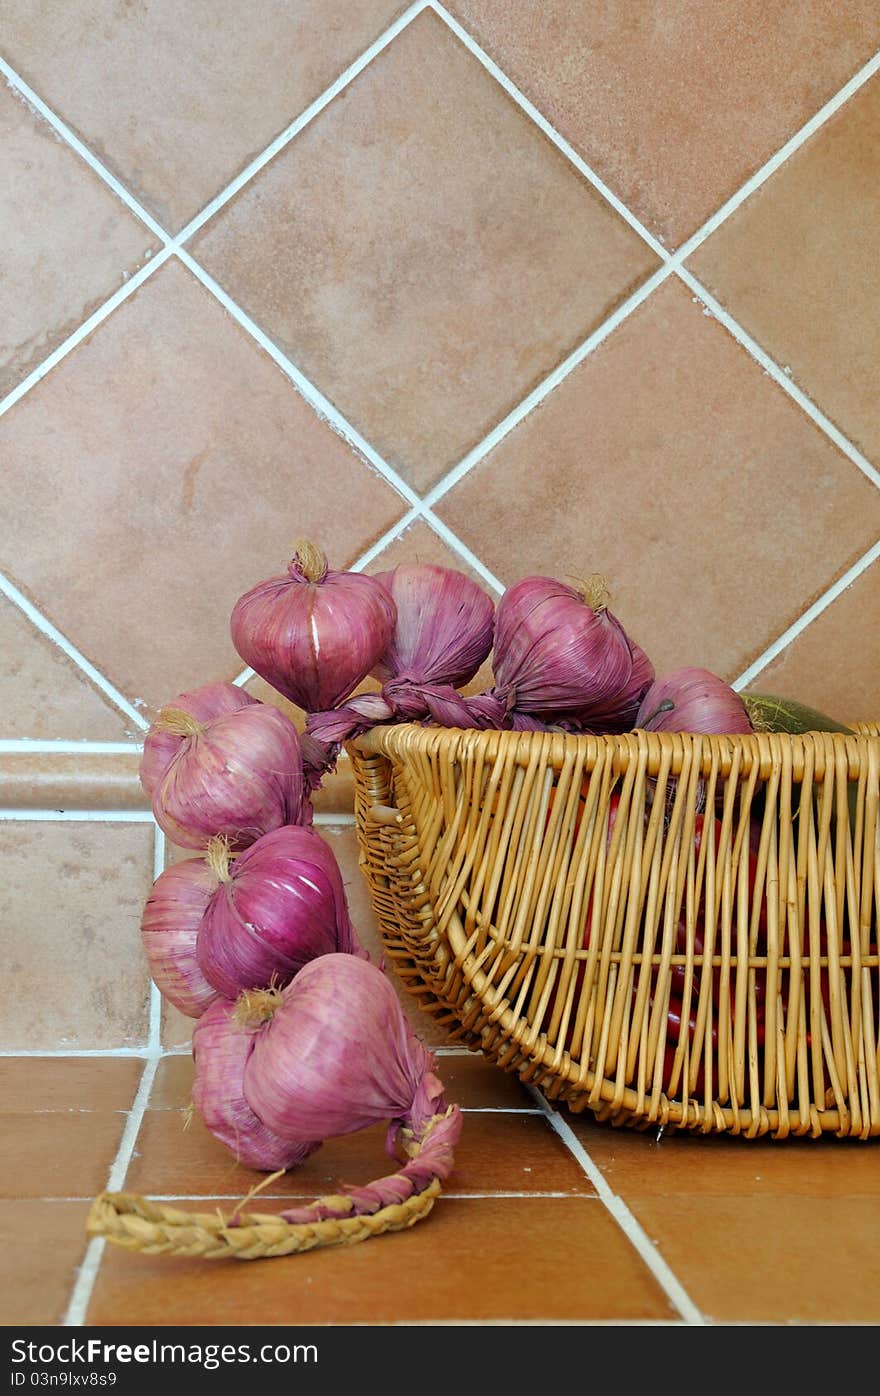 Onion in basket in kitchen, shown as kitchen interior and home life. Onion in basket in kitchen, shown as kitchen interior and home life.